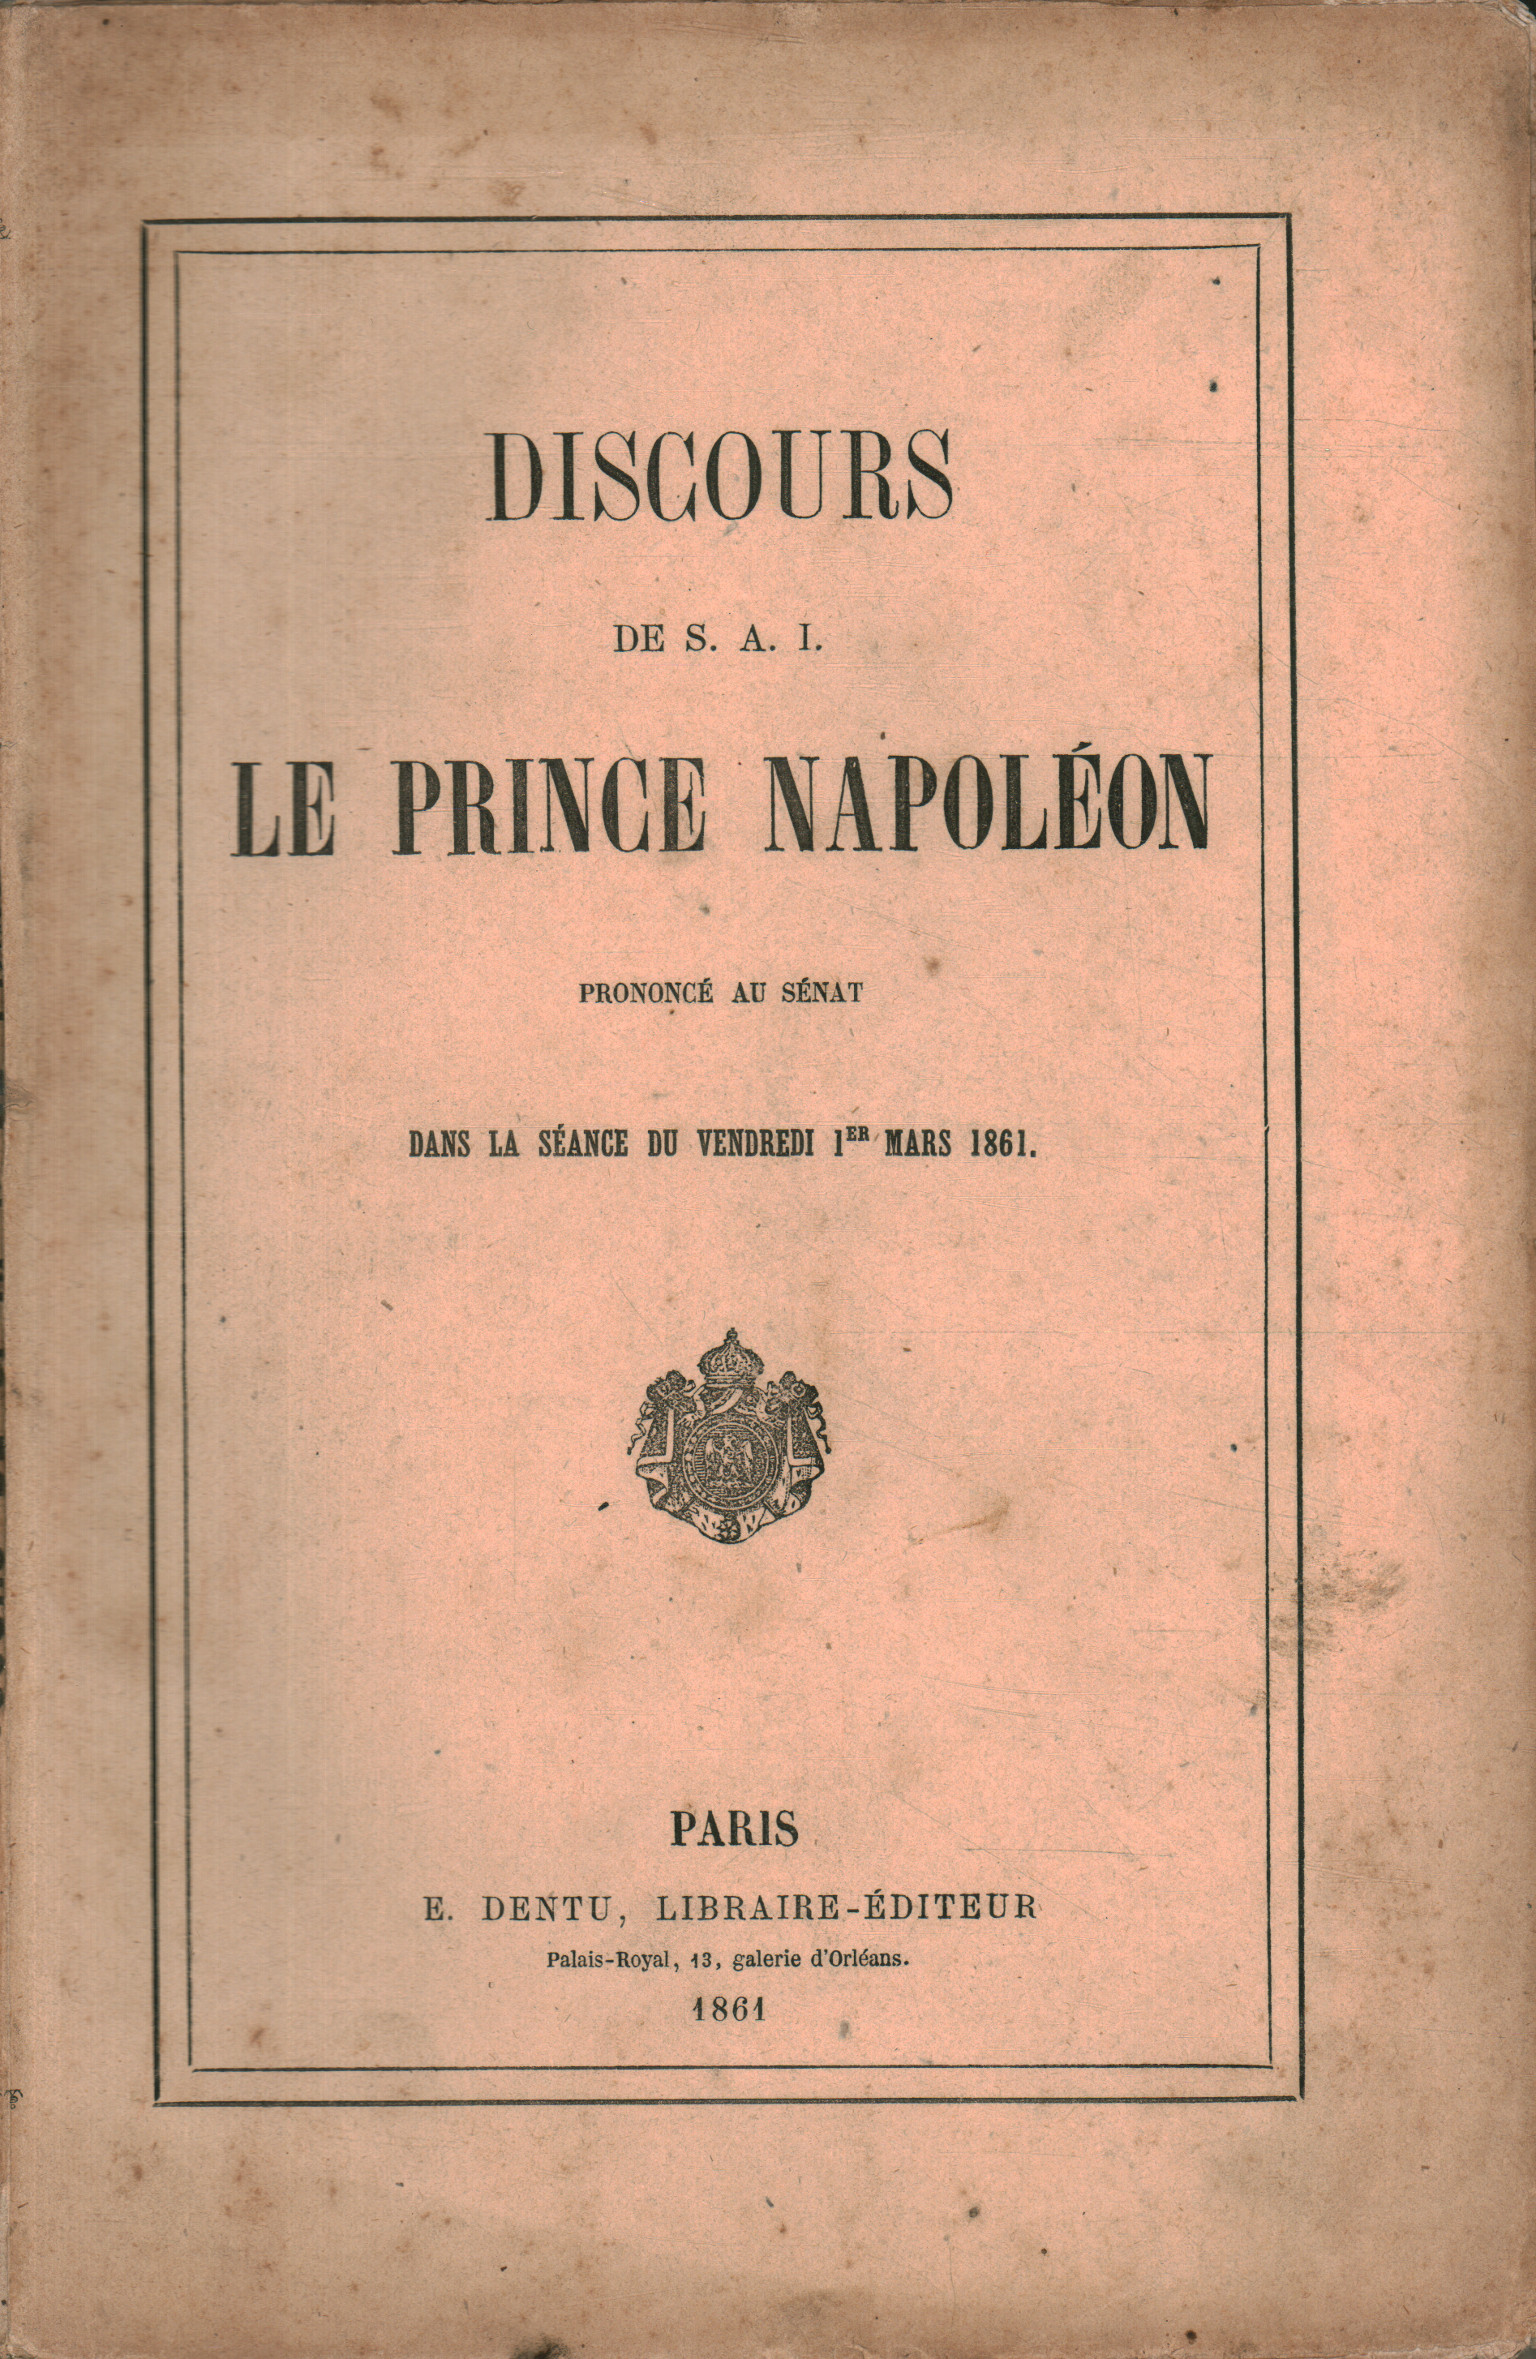 Libros - Historia - Contemporáneo, Discours de S.A.I le prince Napoléo